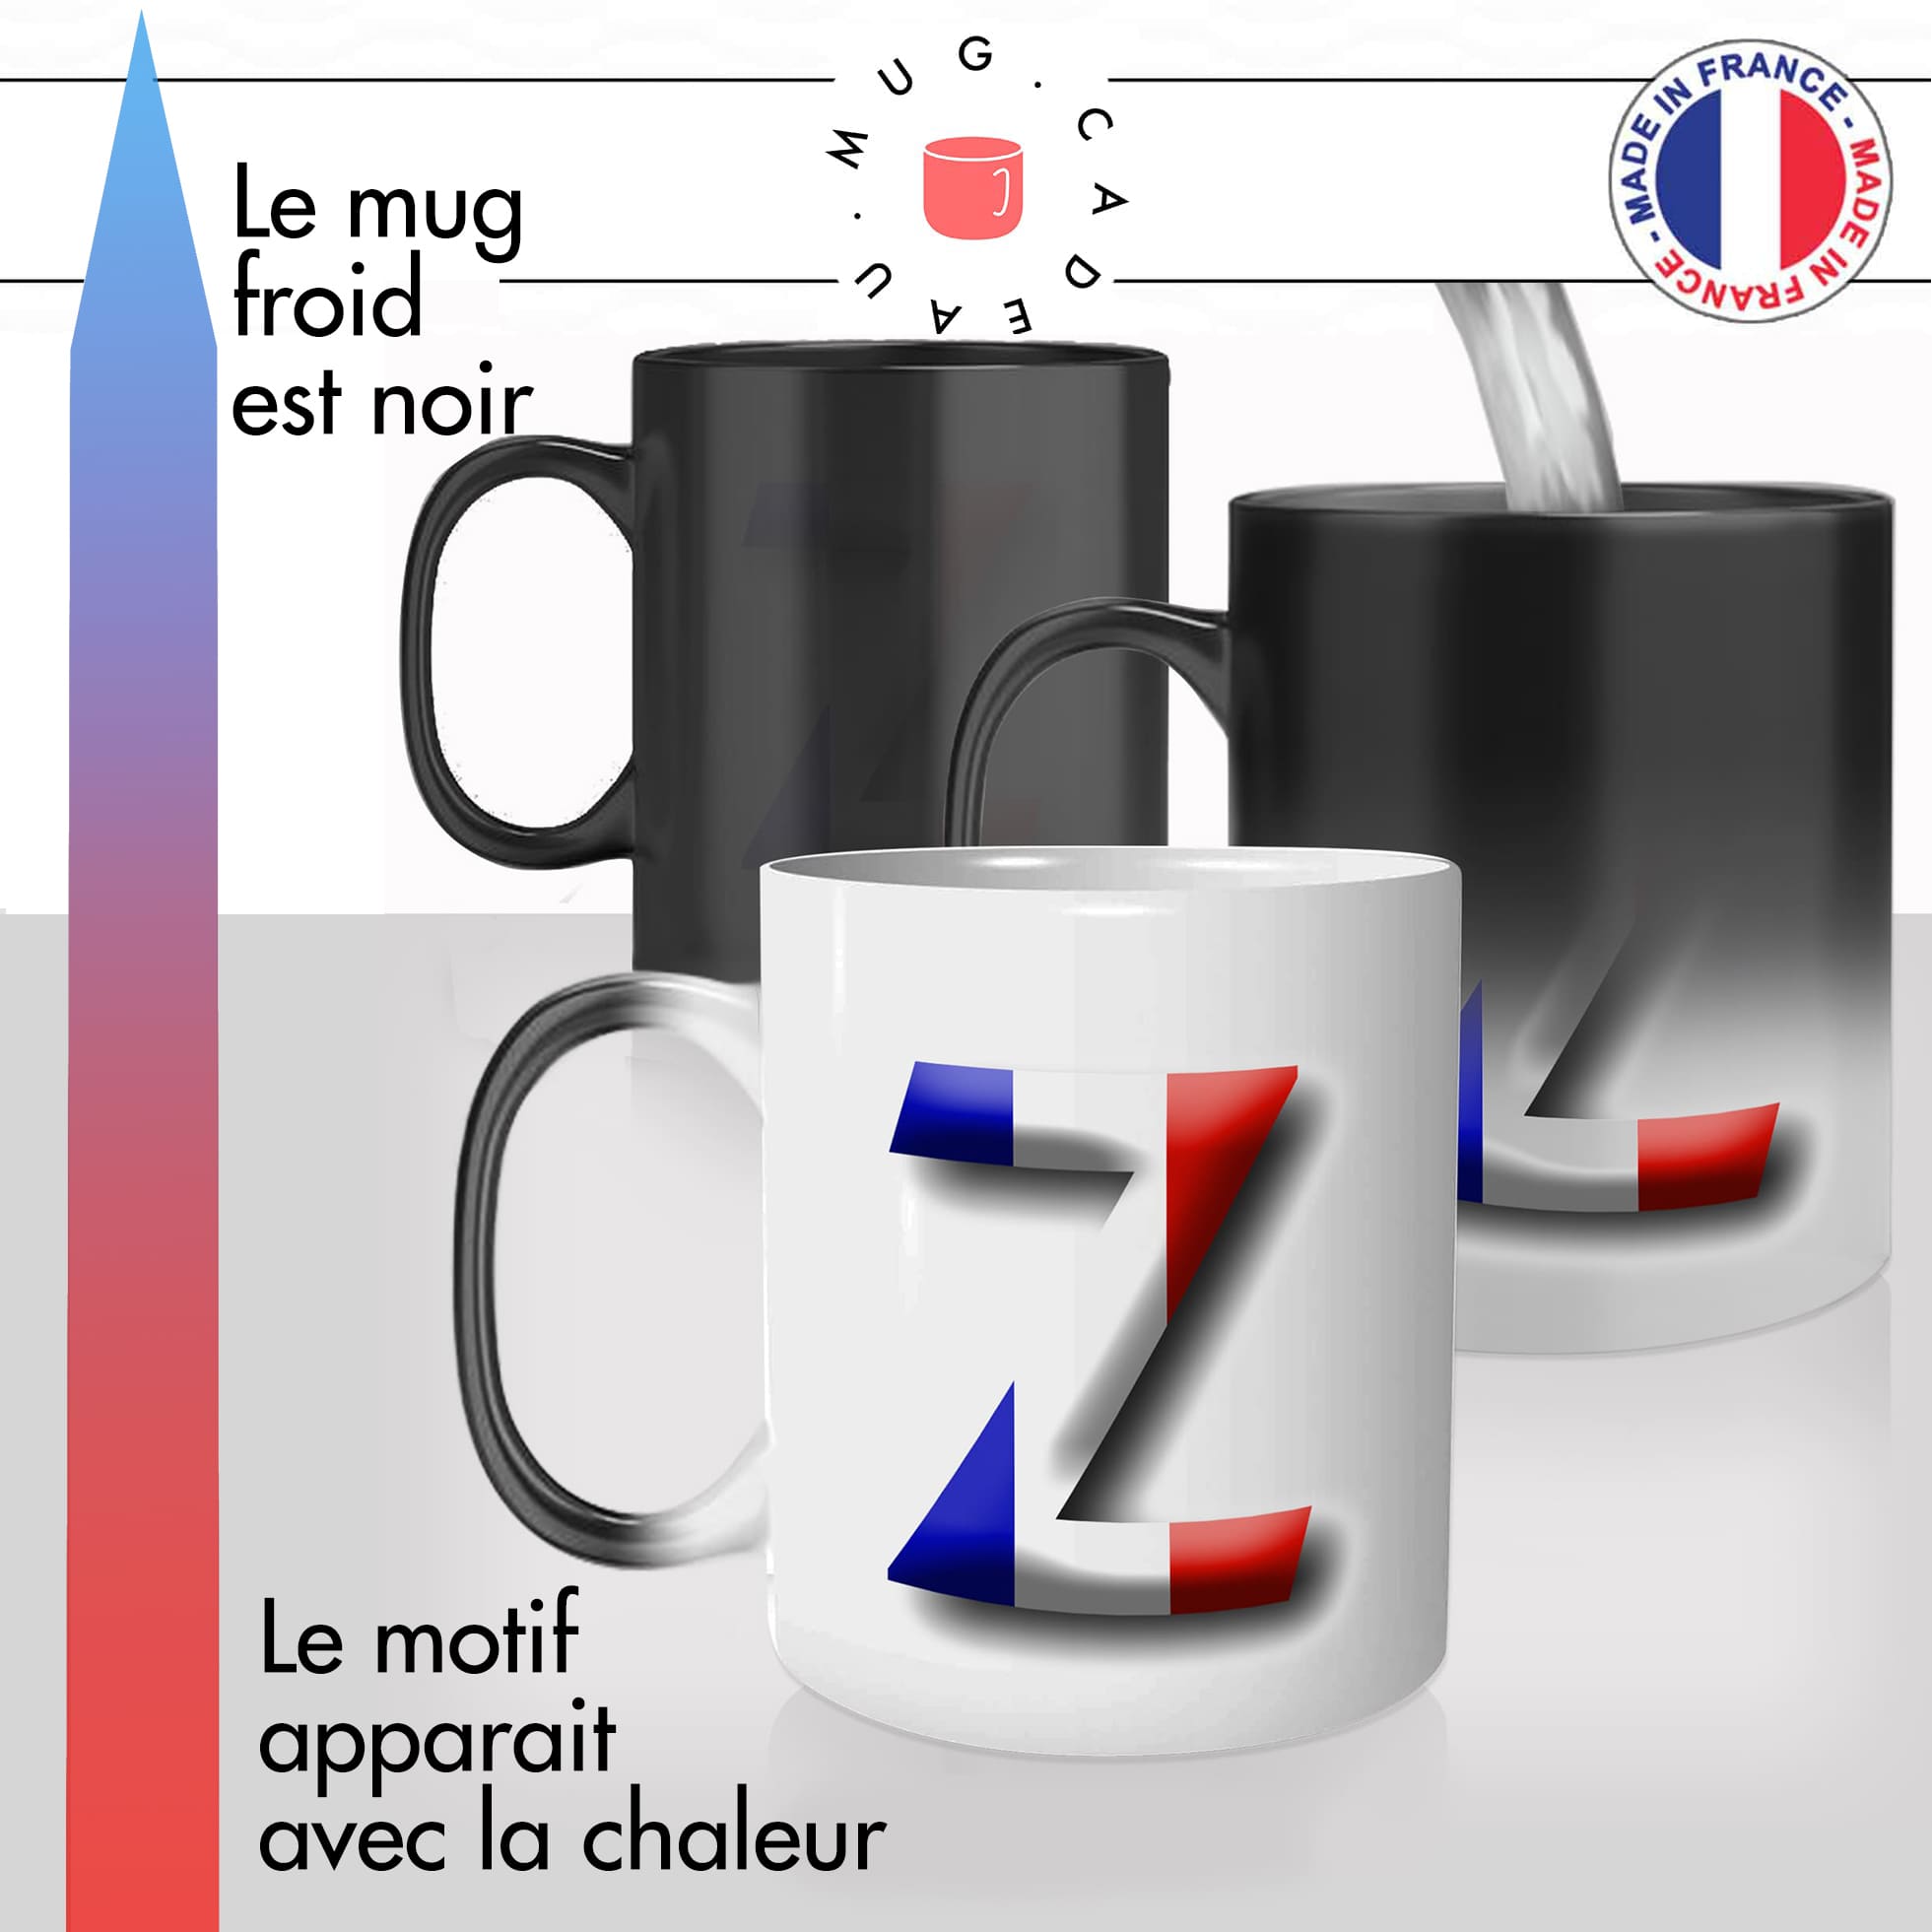 mug magique thermoréactif thermo chauffant personnalisé éléctions 2022 eric zemmour z drapeau francais president offrir patriote idée cadeau fun